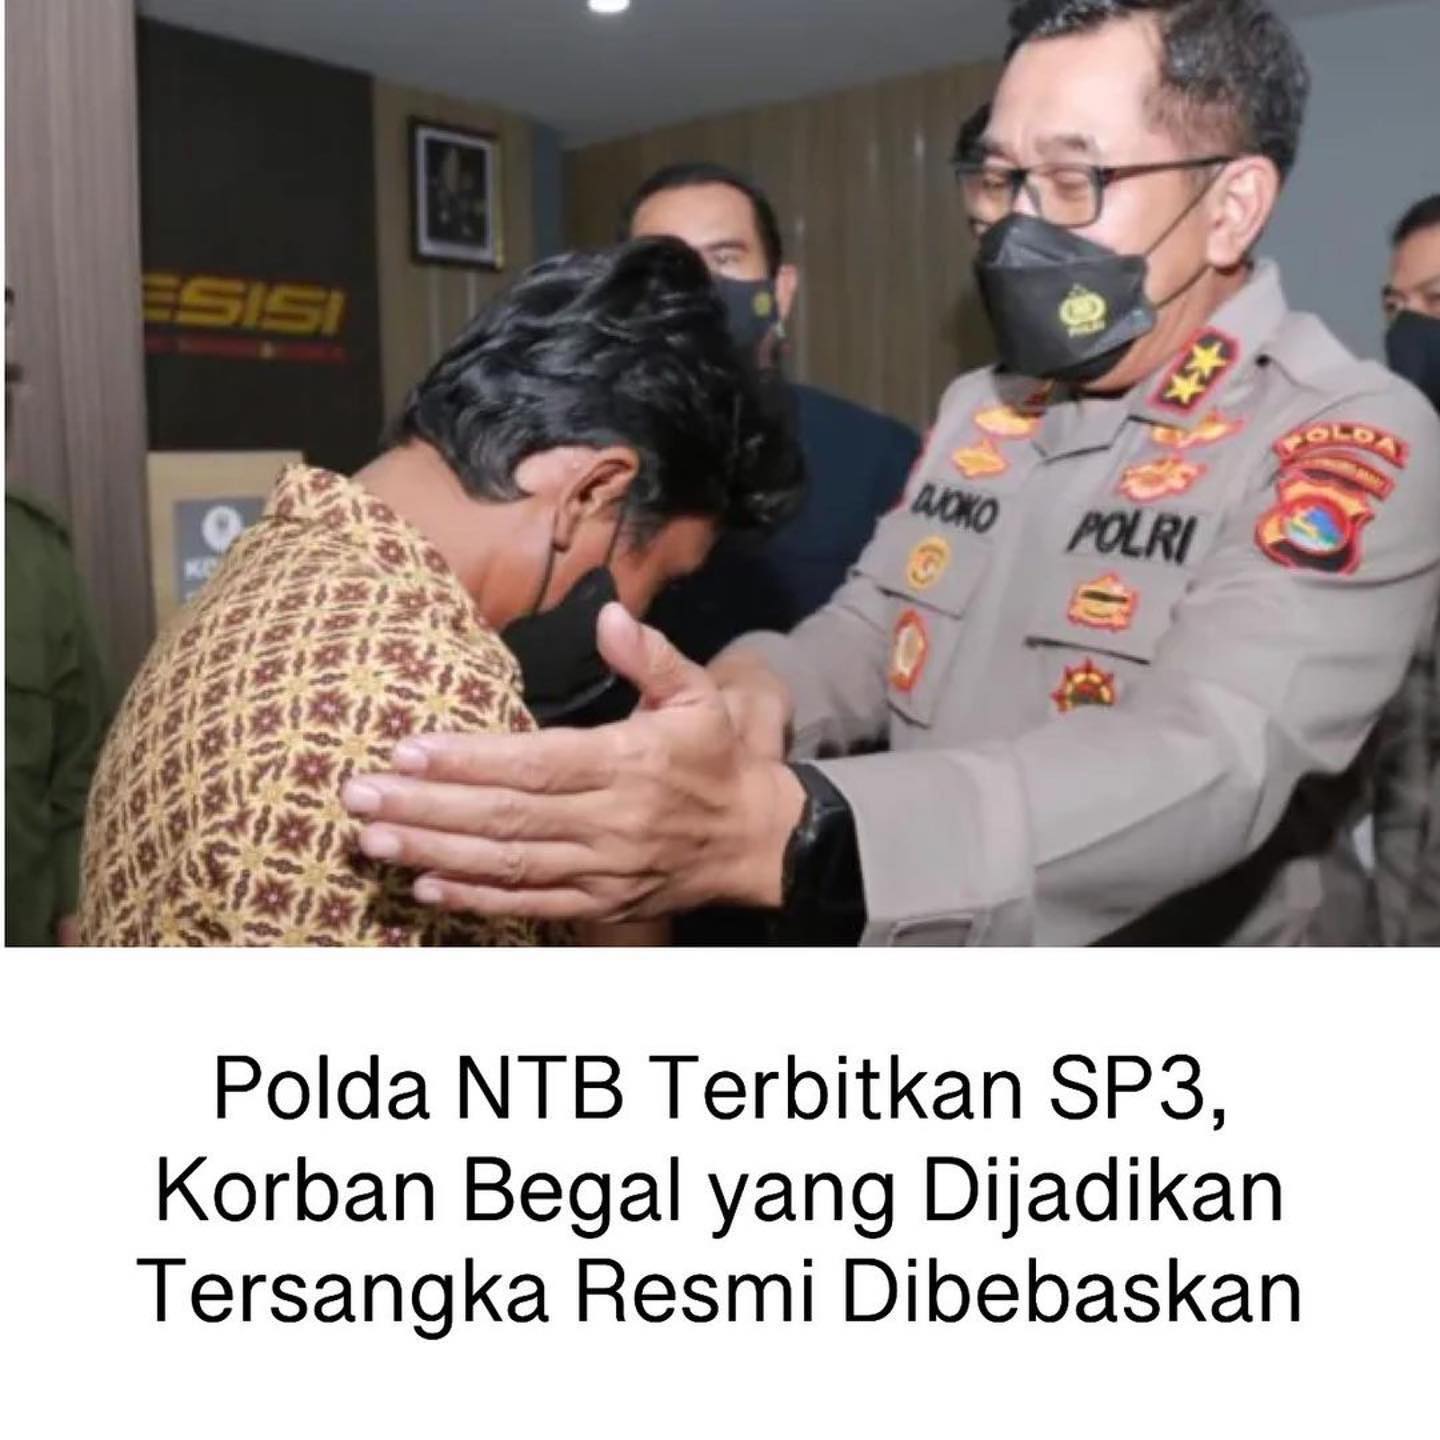 Polda NTB Terbitkan SP3, Korban Begal yang Dijadikan Tersangka Resmi Dibebaskan